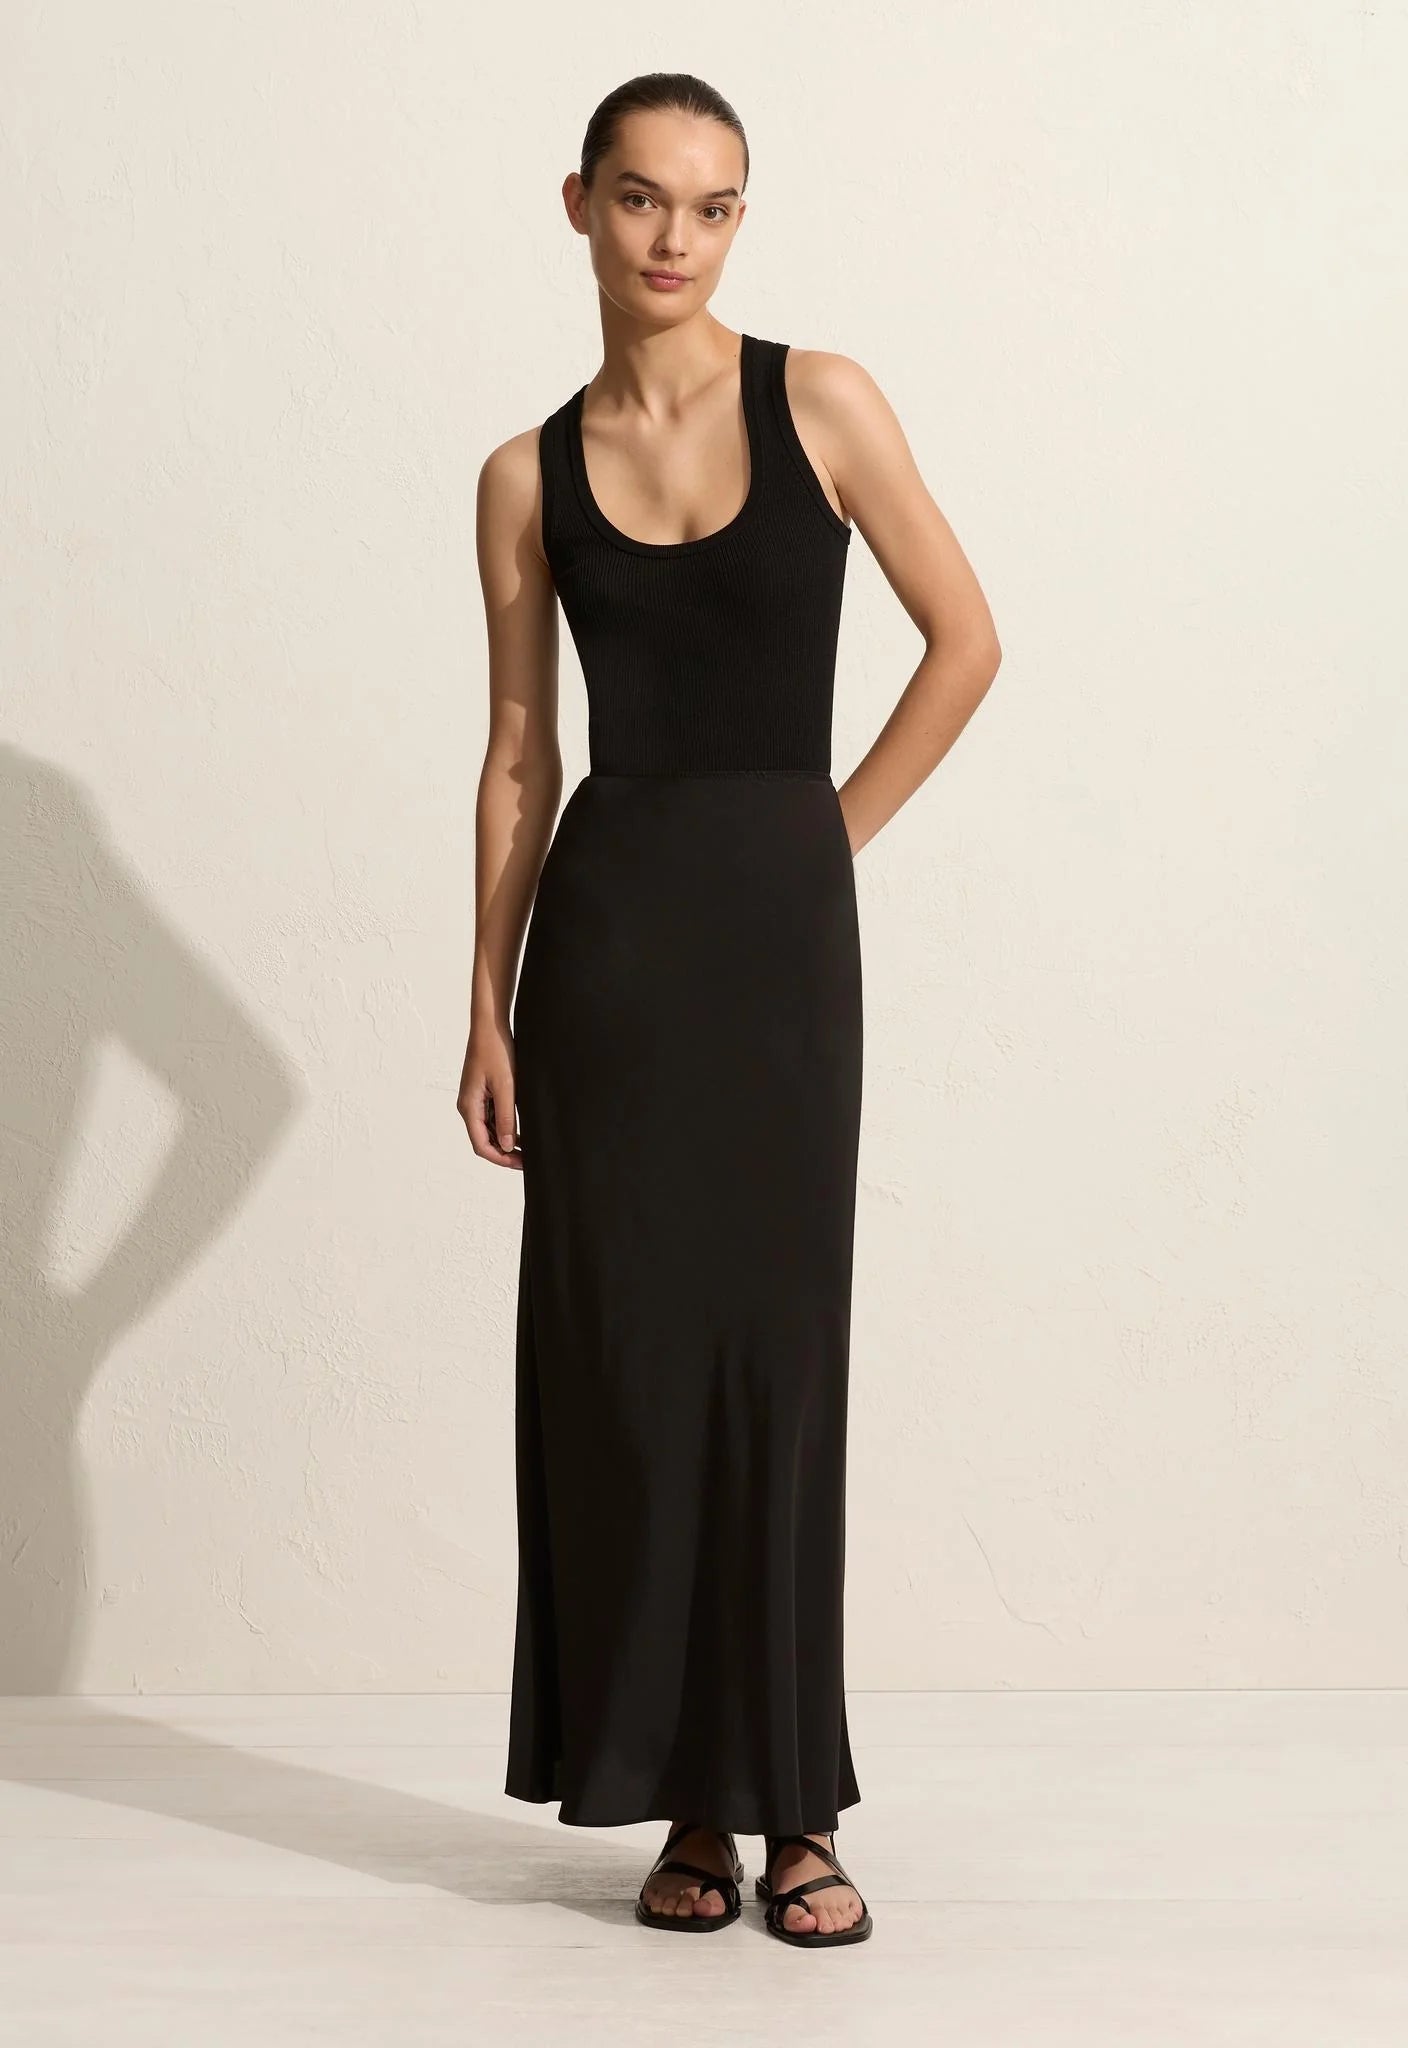 Matteau Bias Elastic Skirt - Black